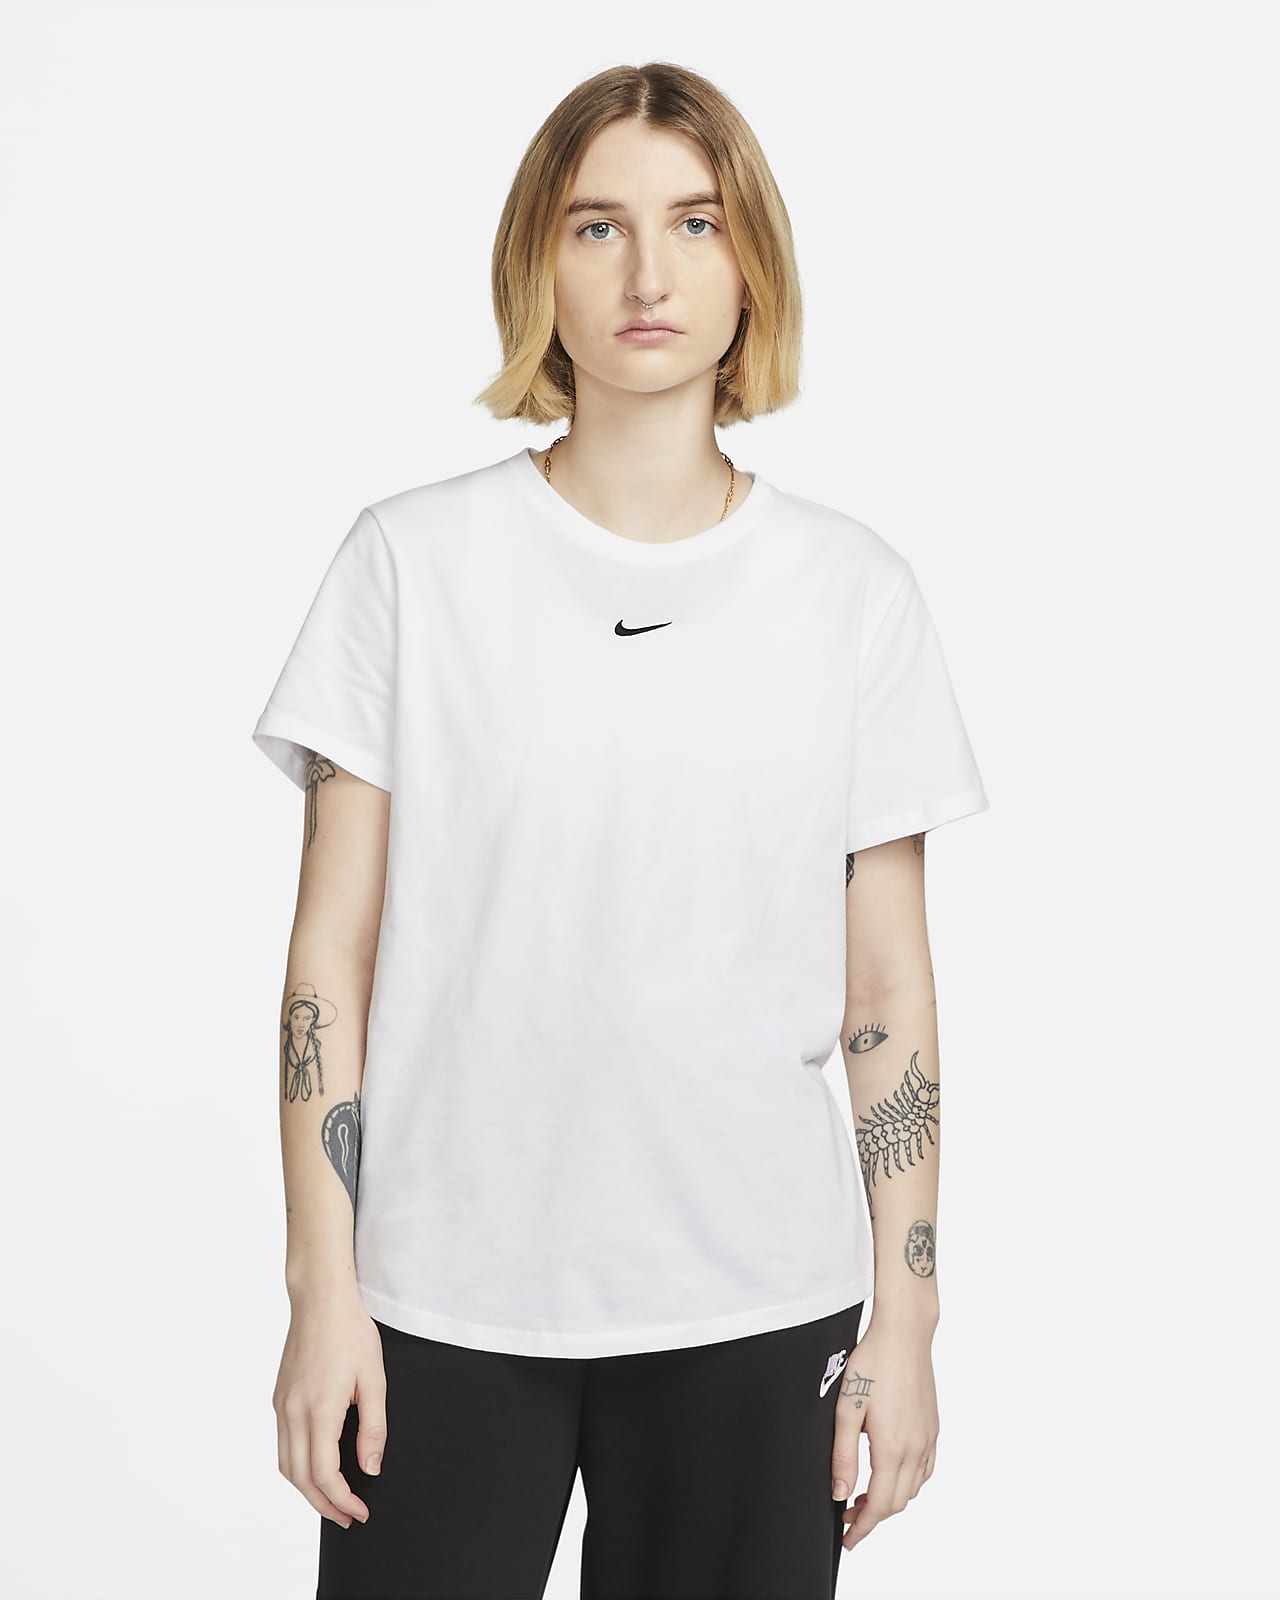 Nike Sportswear Essential Women's T-Shirt. Nike